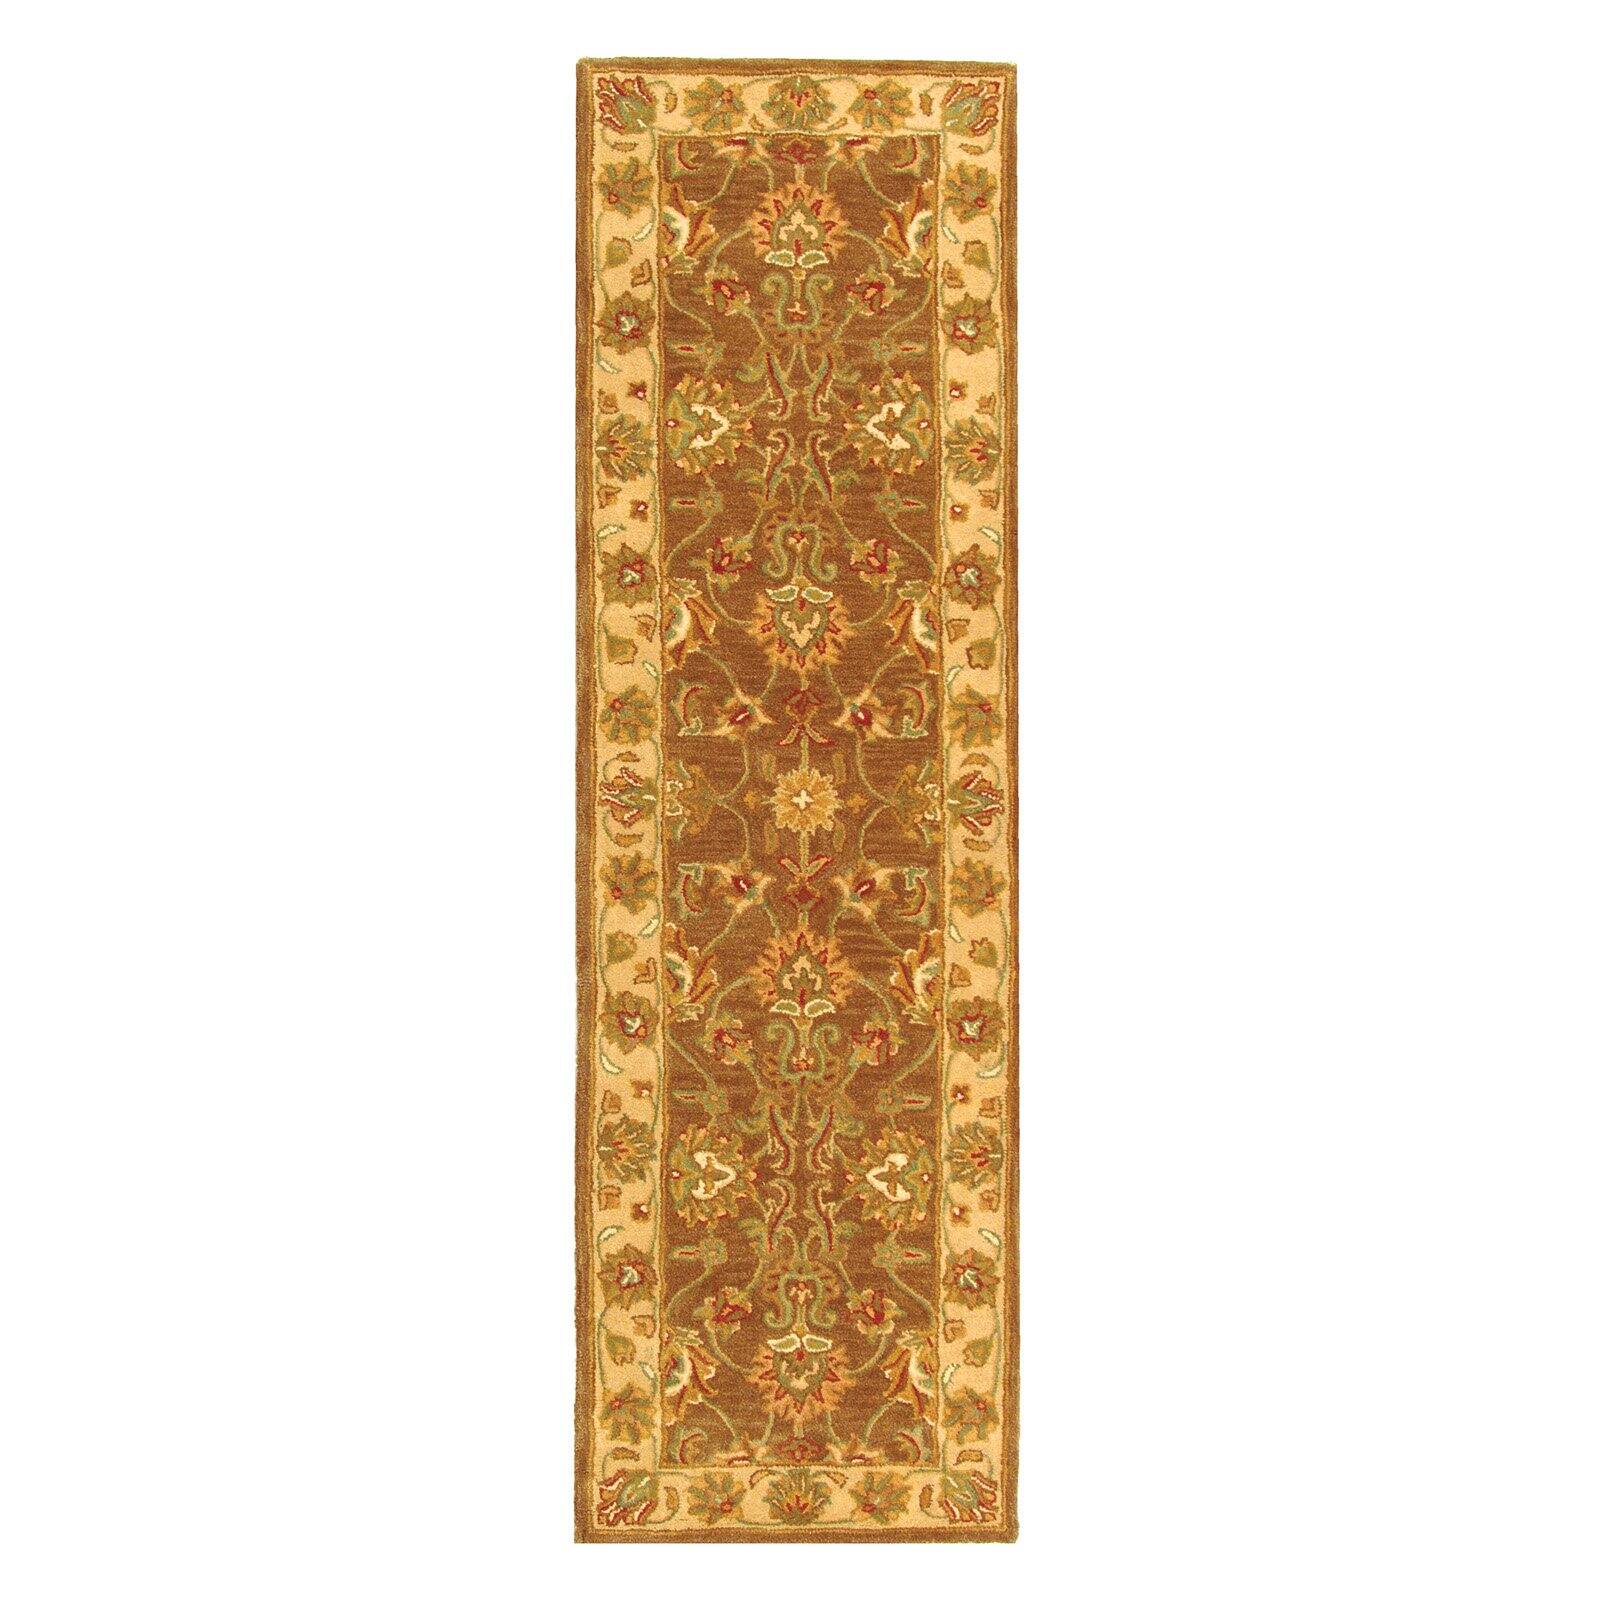 SAFAVIEH Heritage Regis Traditional Wool Runner Rug, Brown/Ivory, 2'3" x 14' - image 3 of 9